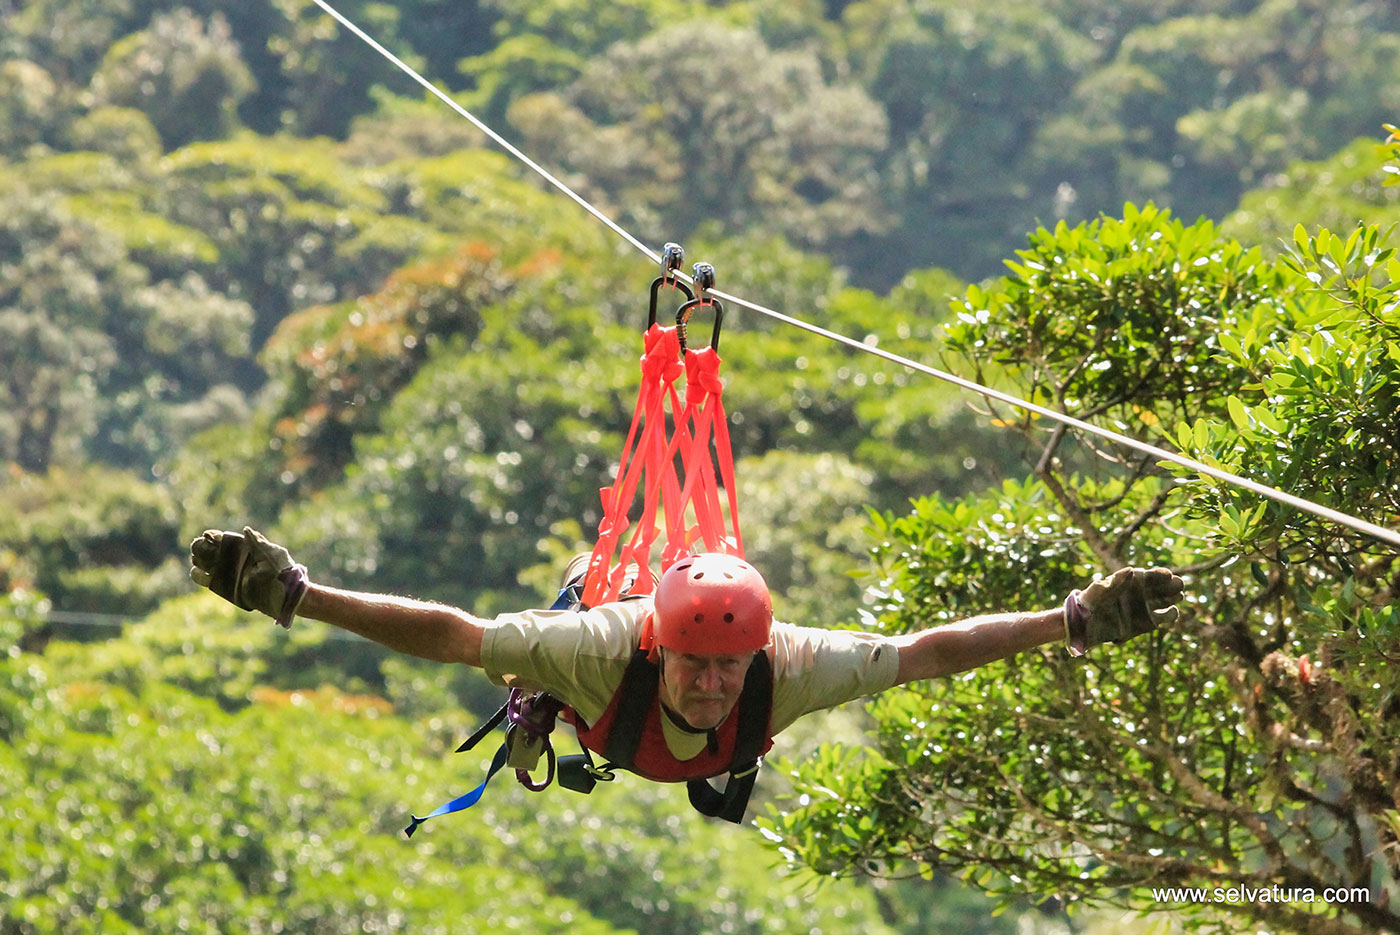 aventura canopy tour in costa rica